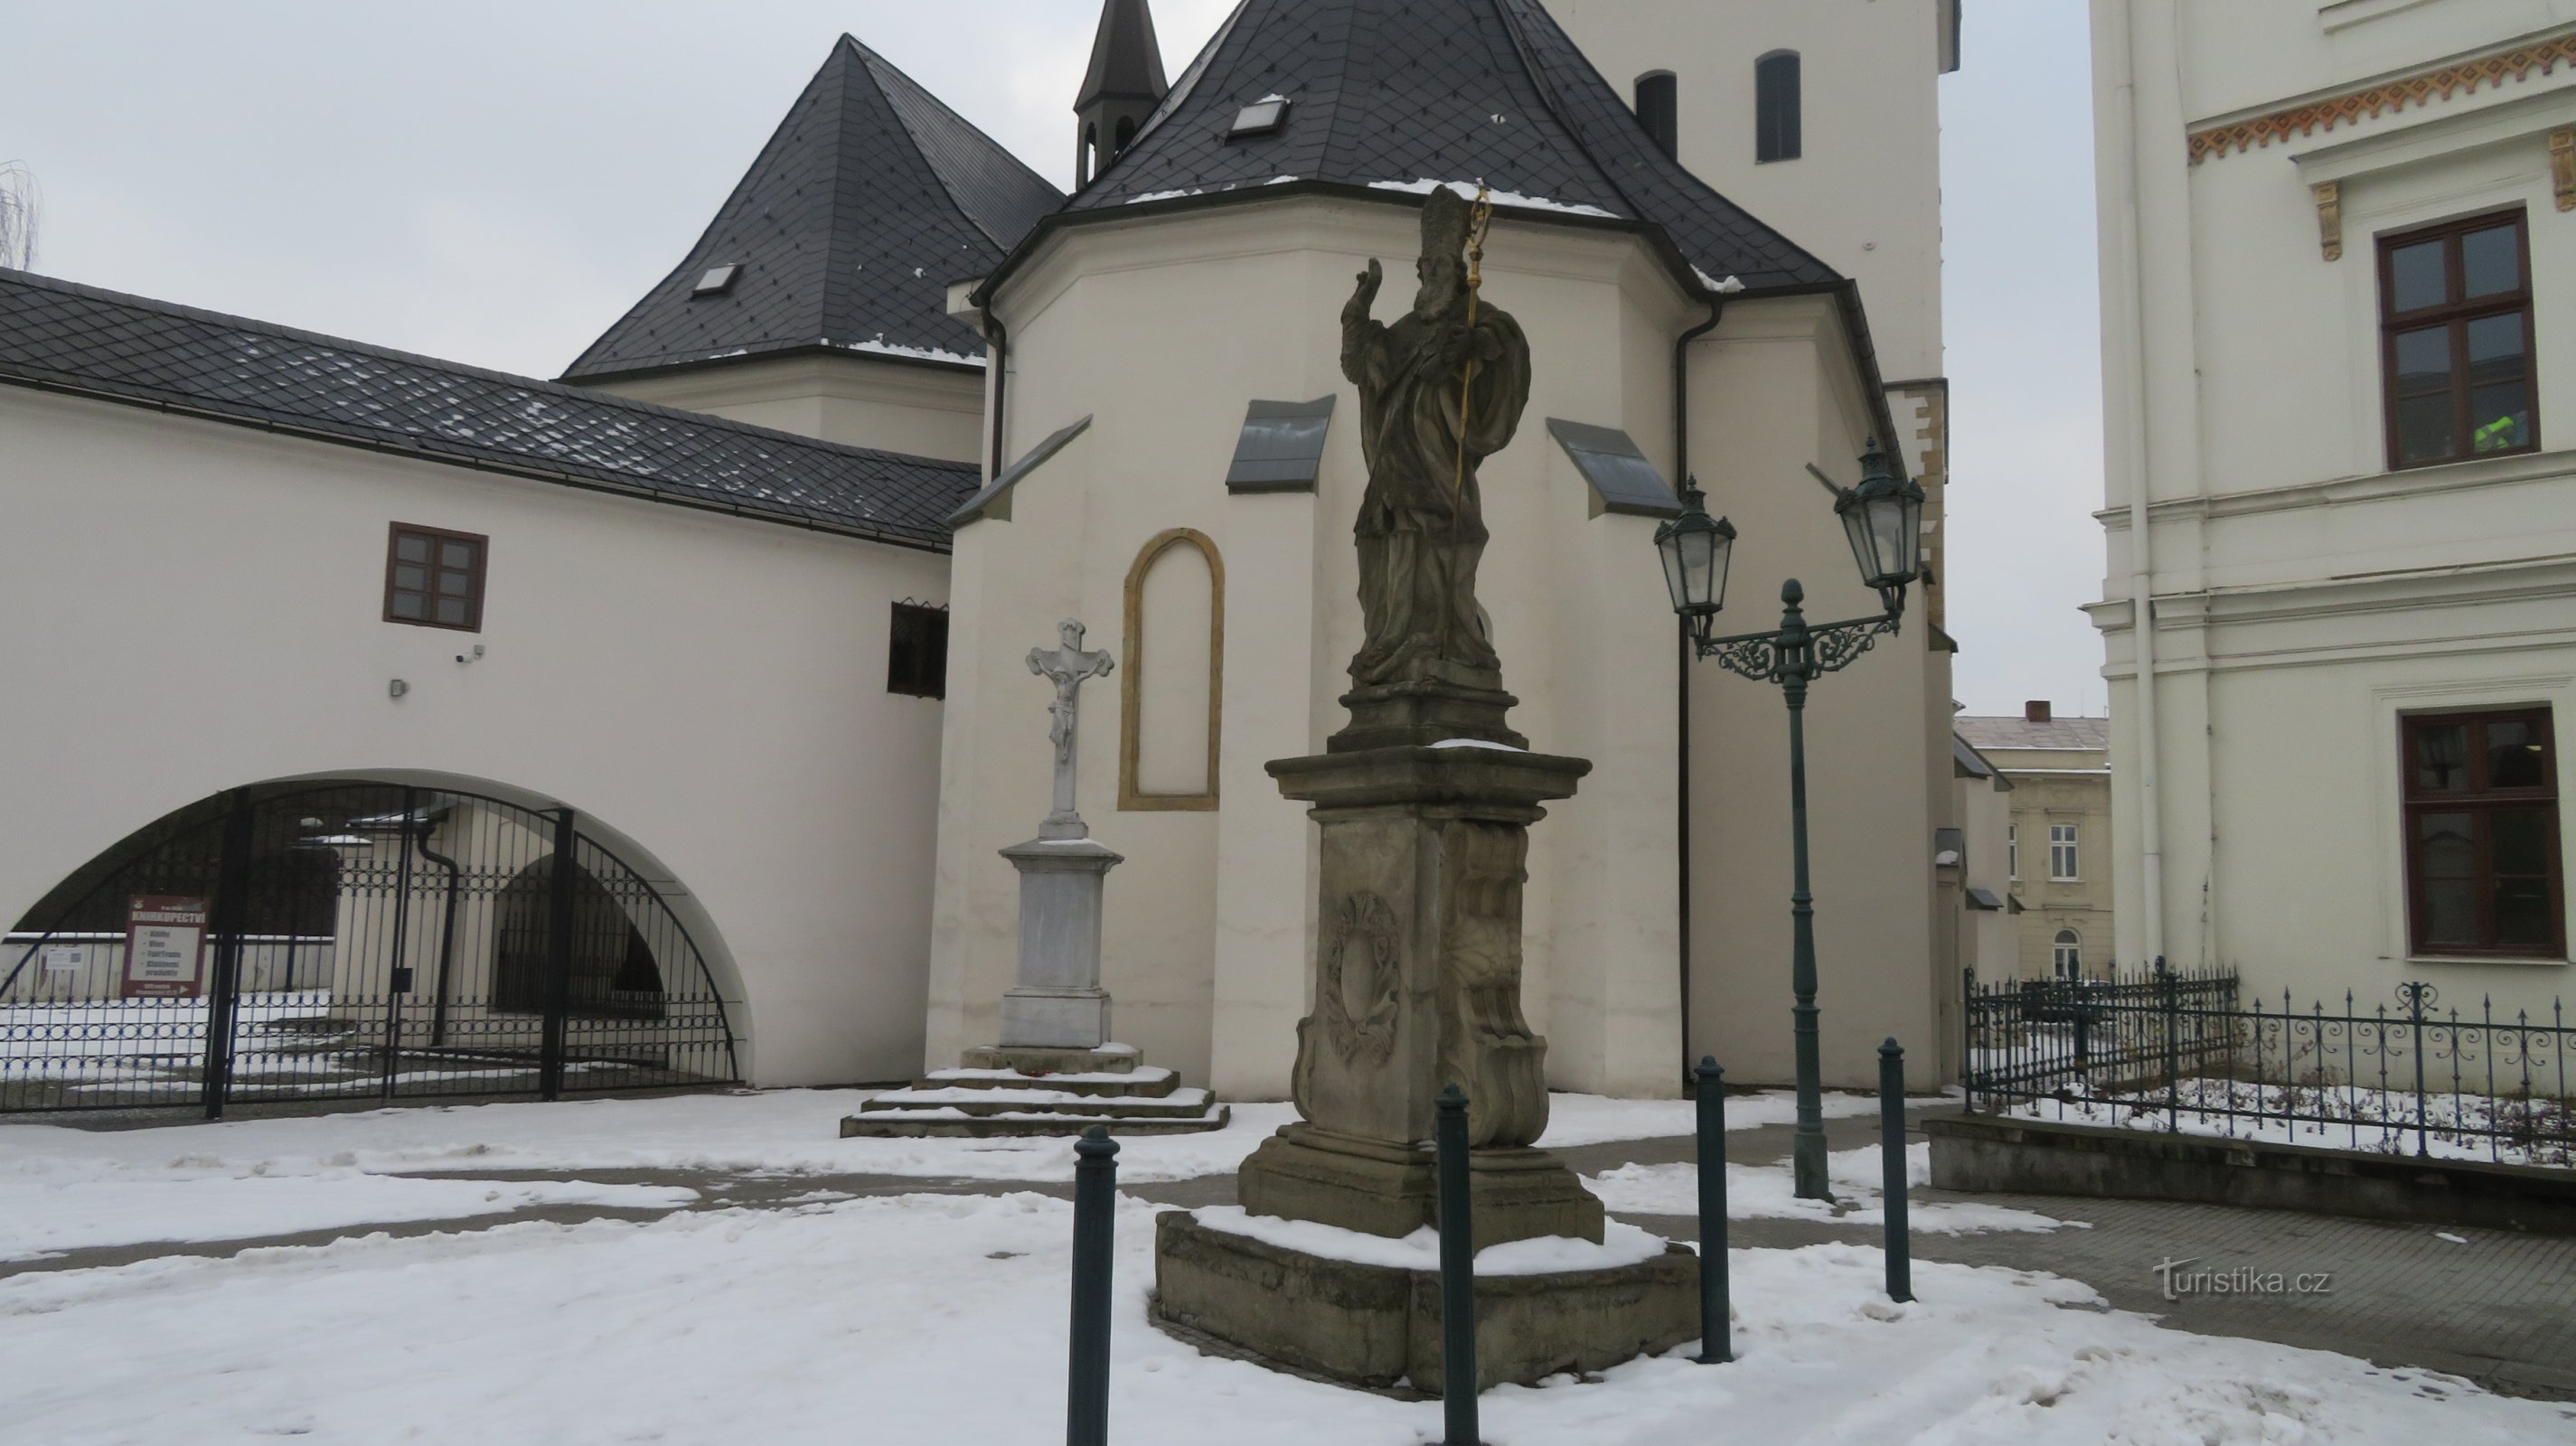 Karviná - les deux seules statues de St. Patrick en République tchèque